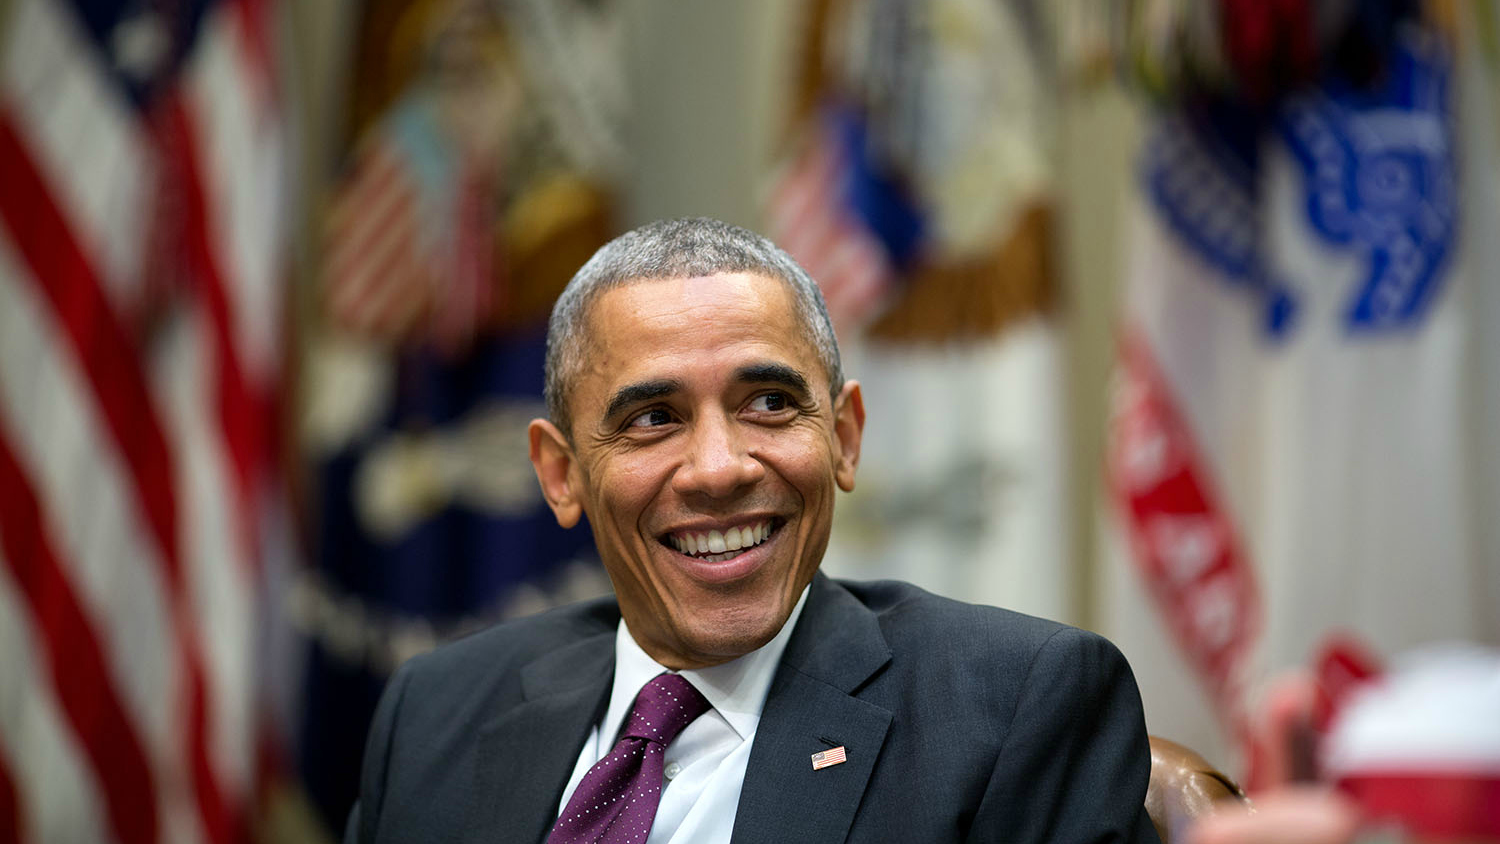 Obama smiling